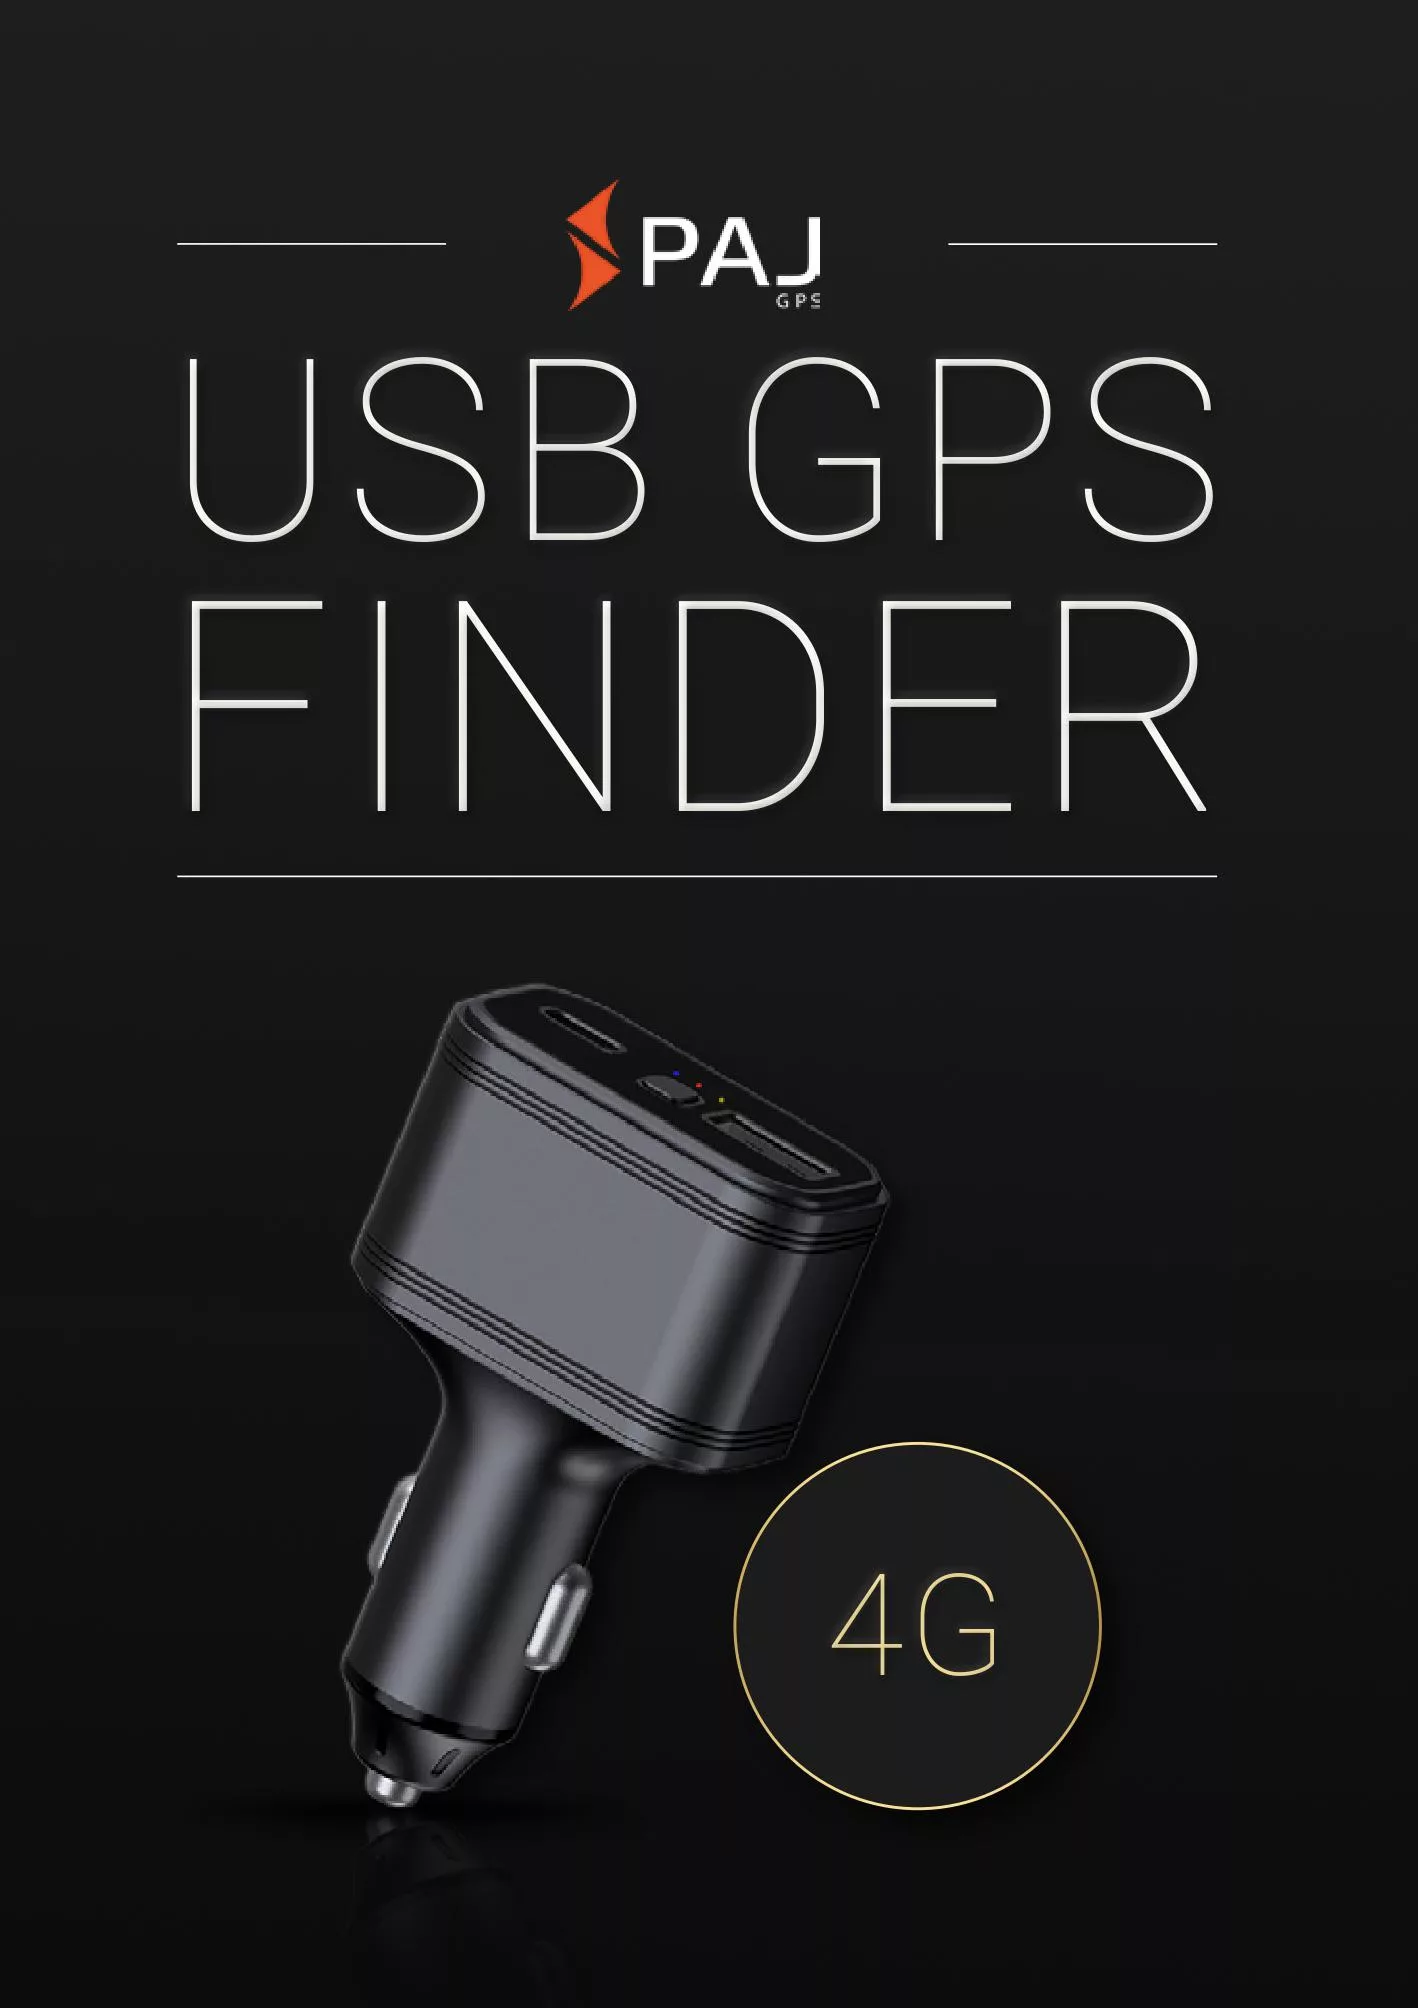 Immagine di copertina per instruzione d'uso USB GPS Finder 4G